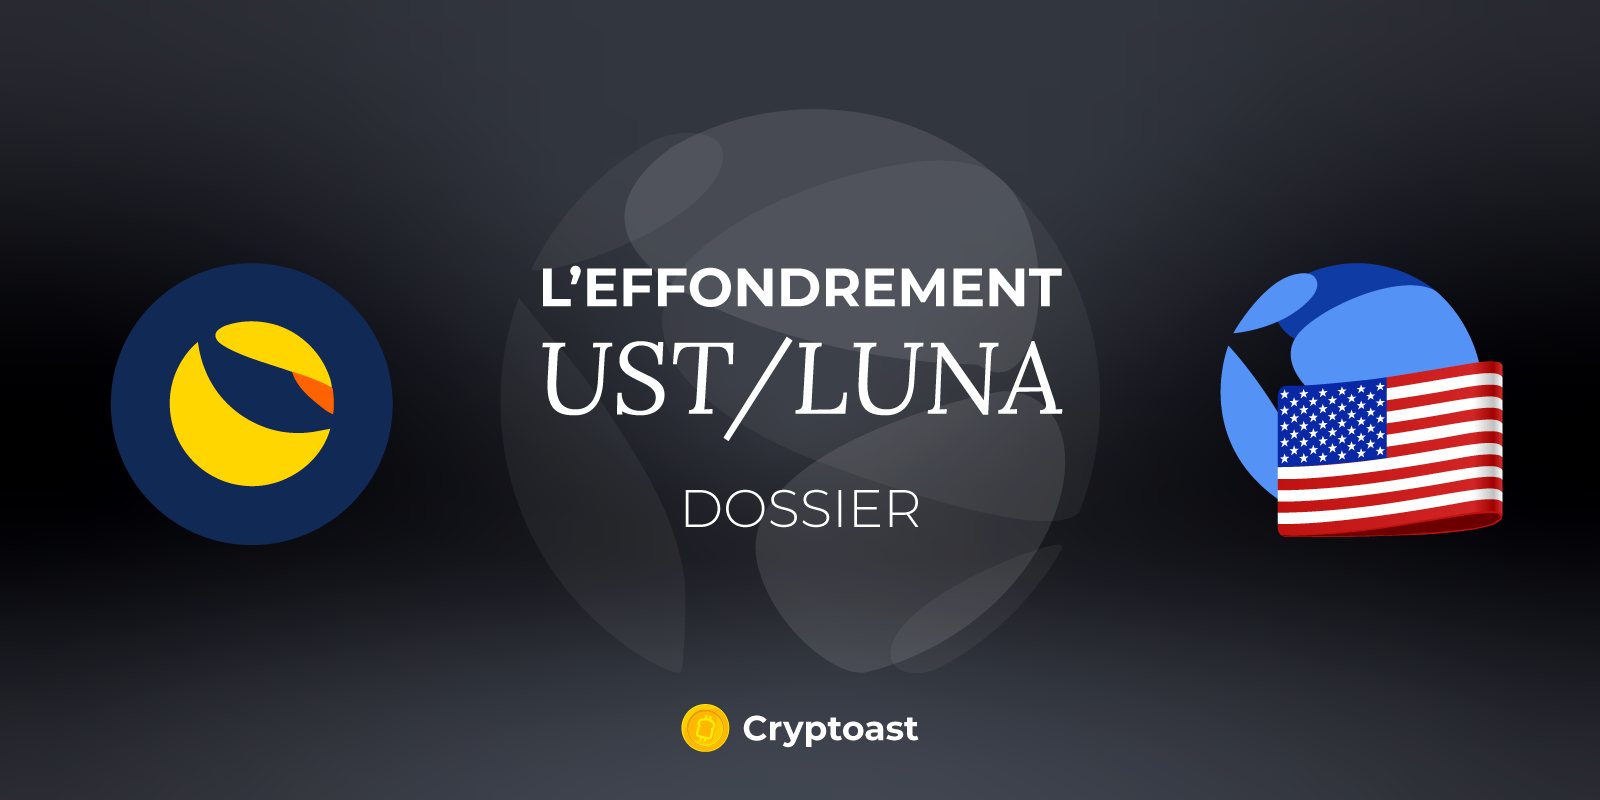 DOSSIER – Les conséquences de l'effondrement de l'écosystème Terra (UST/LUNA) pour l'industrie crypto